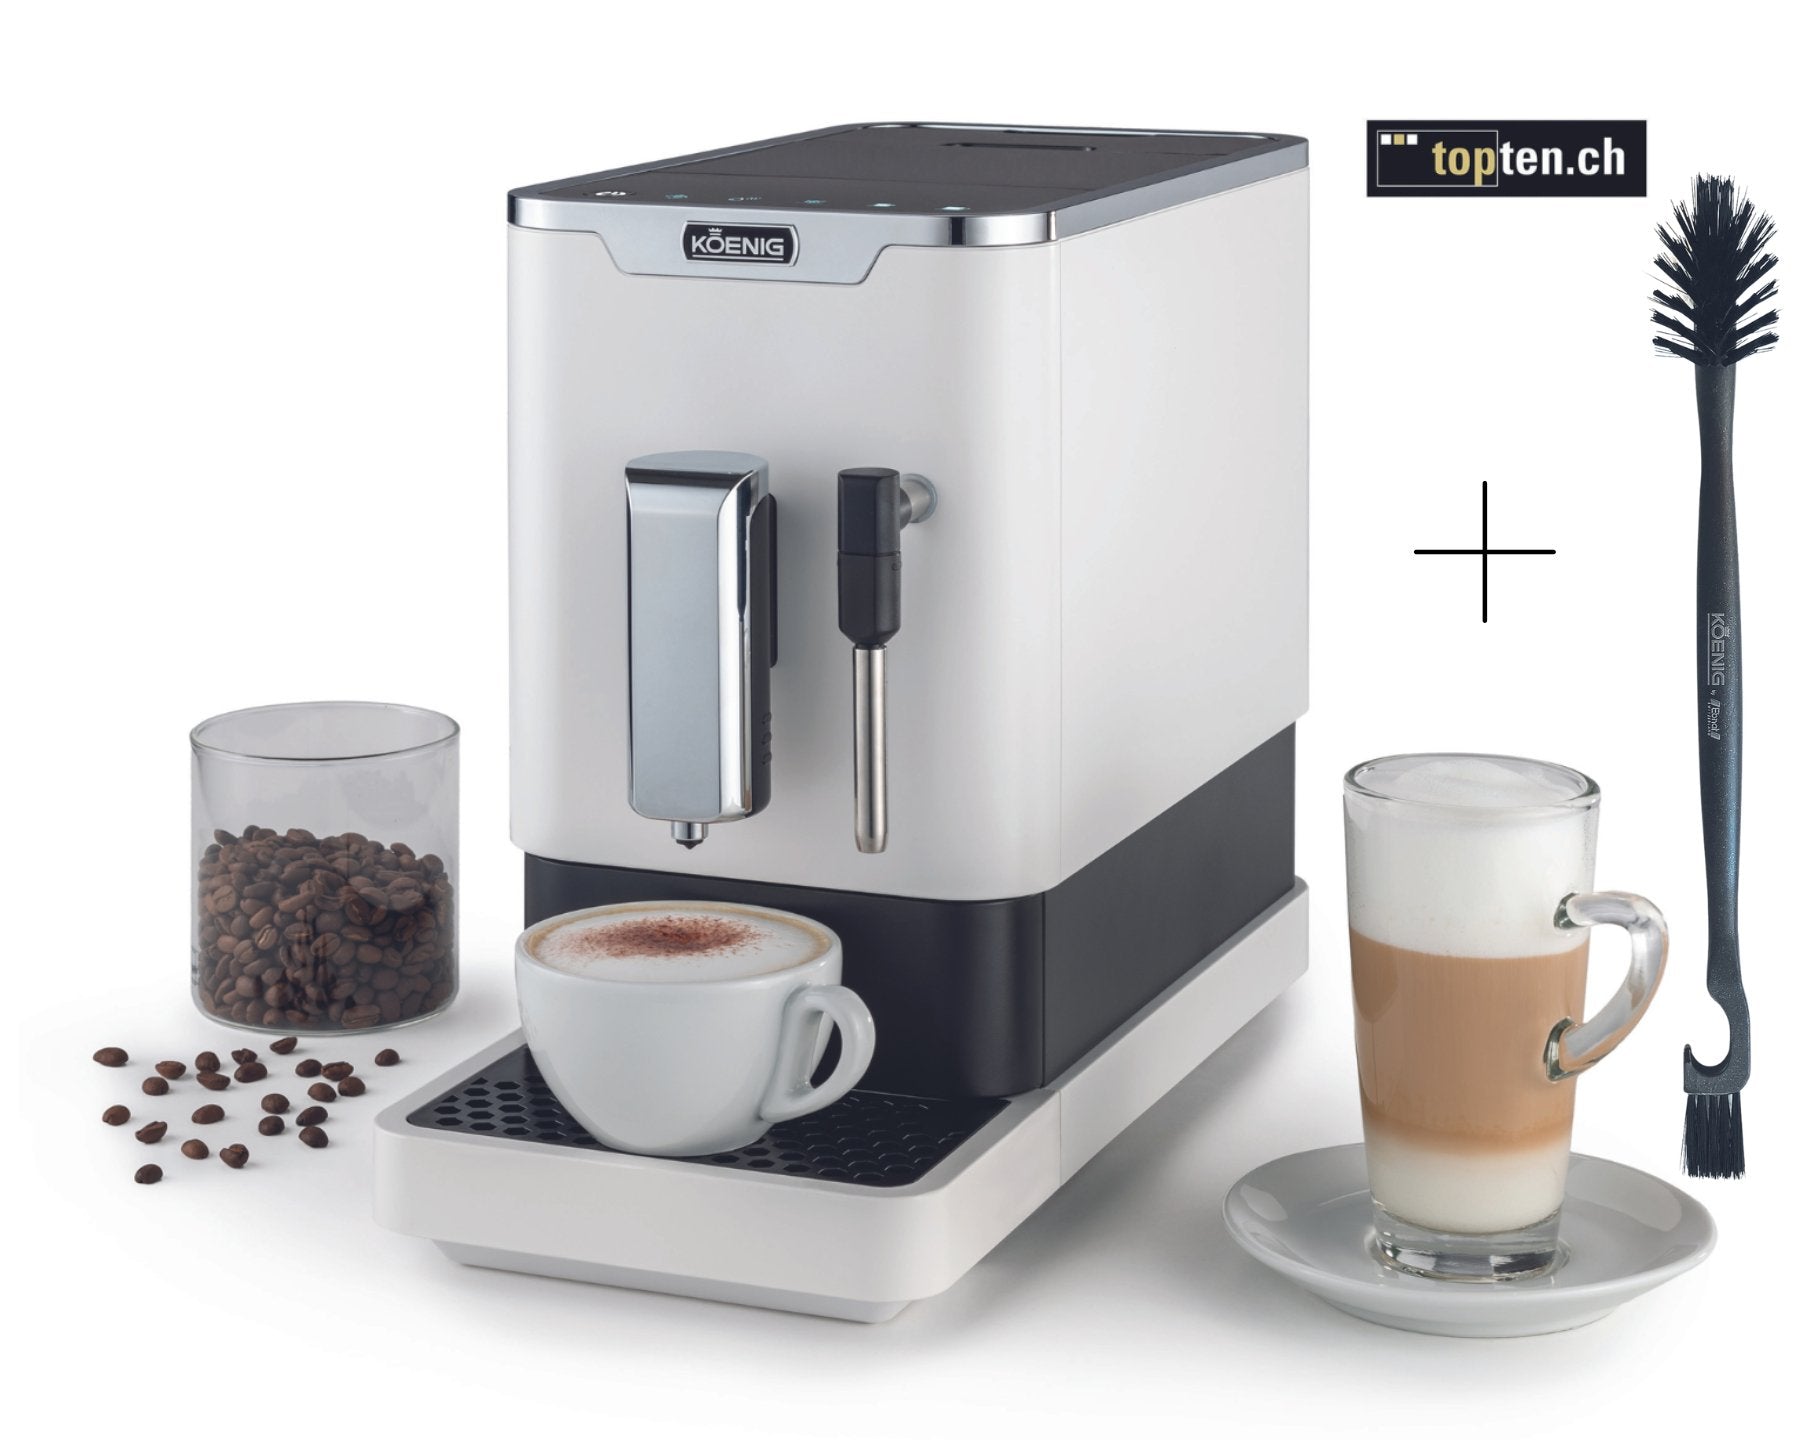 KOENIG Kaffeevollautomat Finessa Milk Plus Reinigungsbürste kostenlos dazu kitchen-more.ch, kostenloser Versand in der ganzen Schweiz